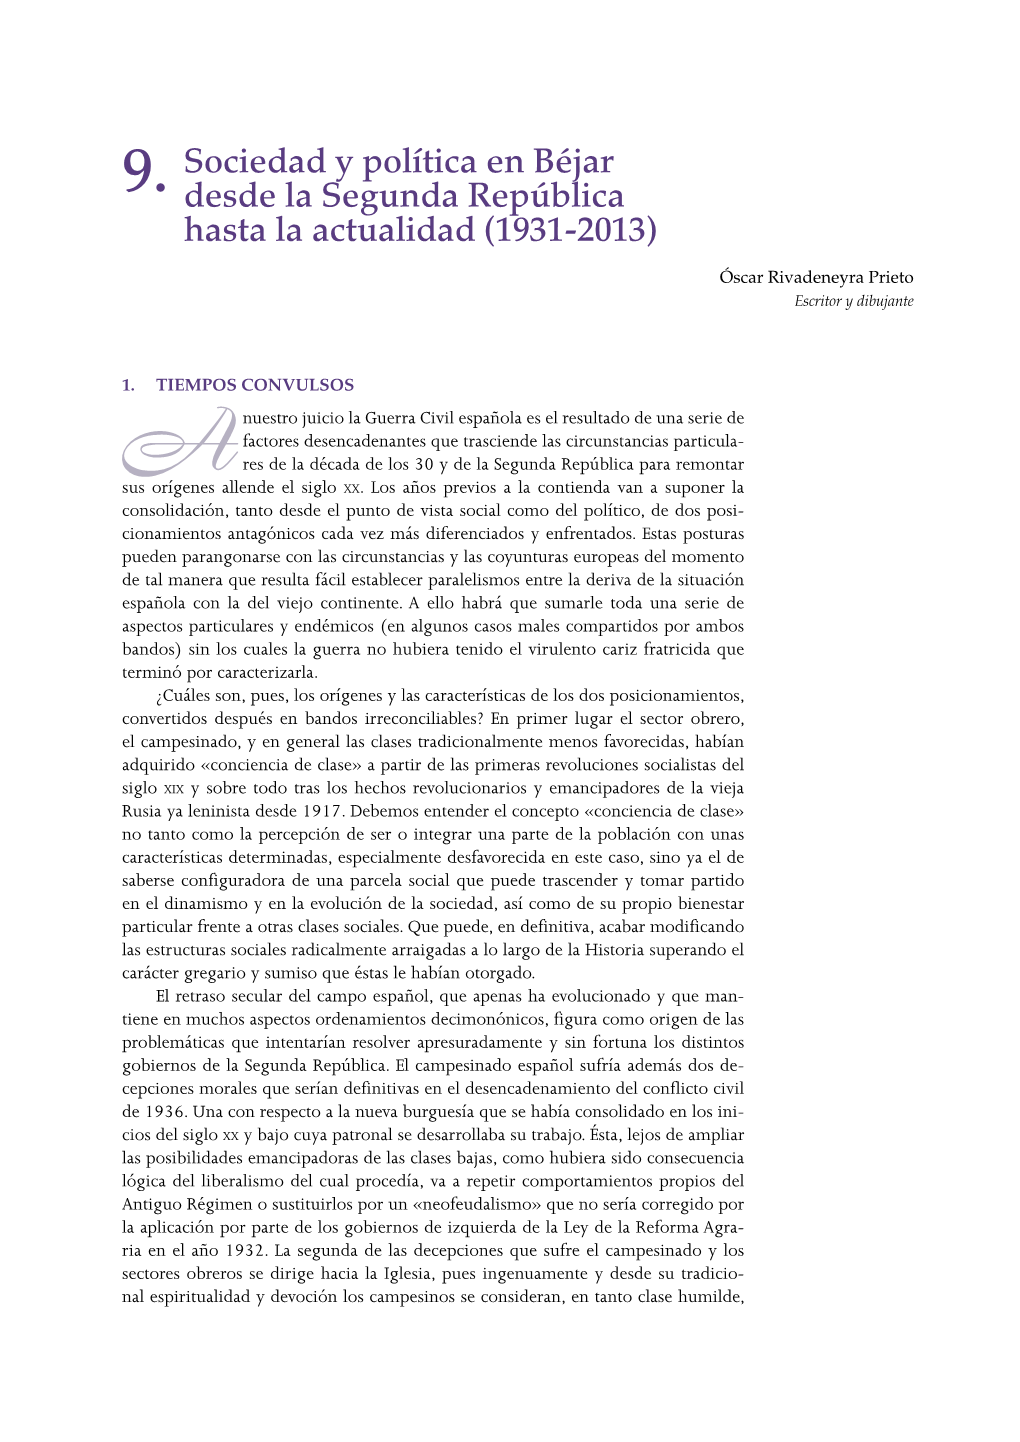 9. Sociedad Y Política En Béjar Desde La Segunda República Hasta La Actualidad (1931-2013) 265